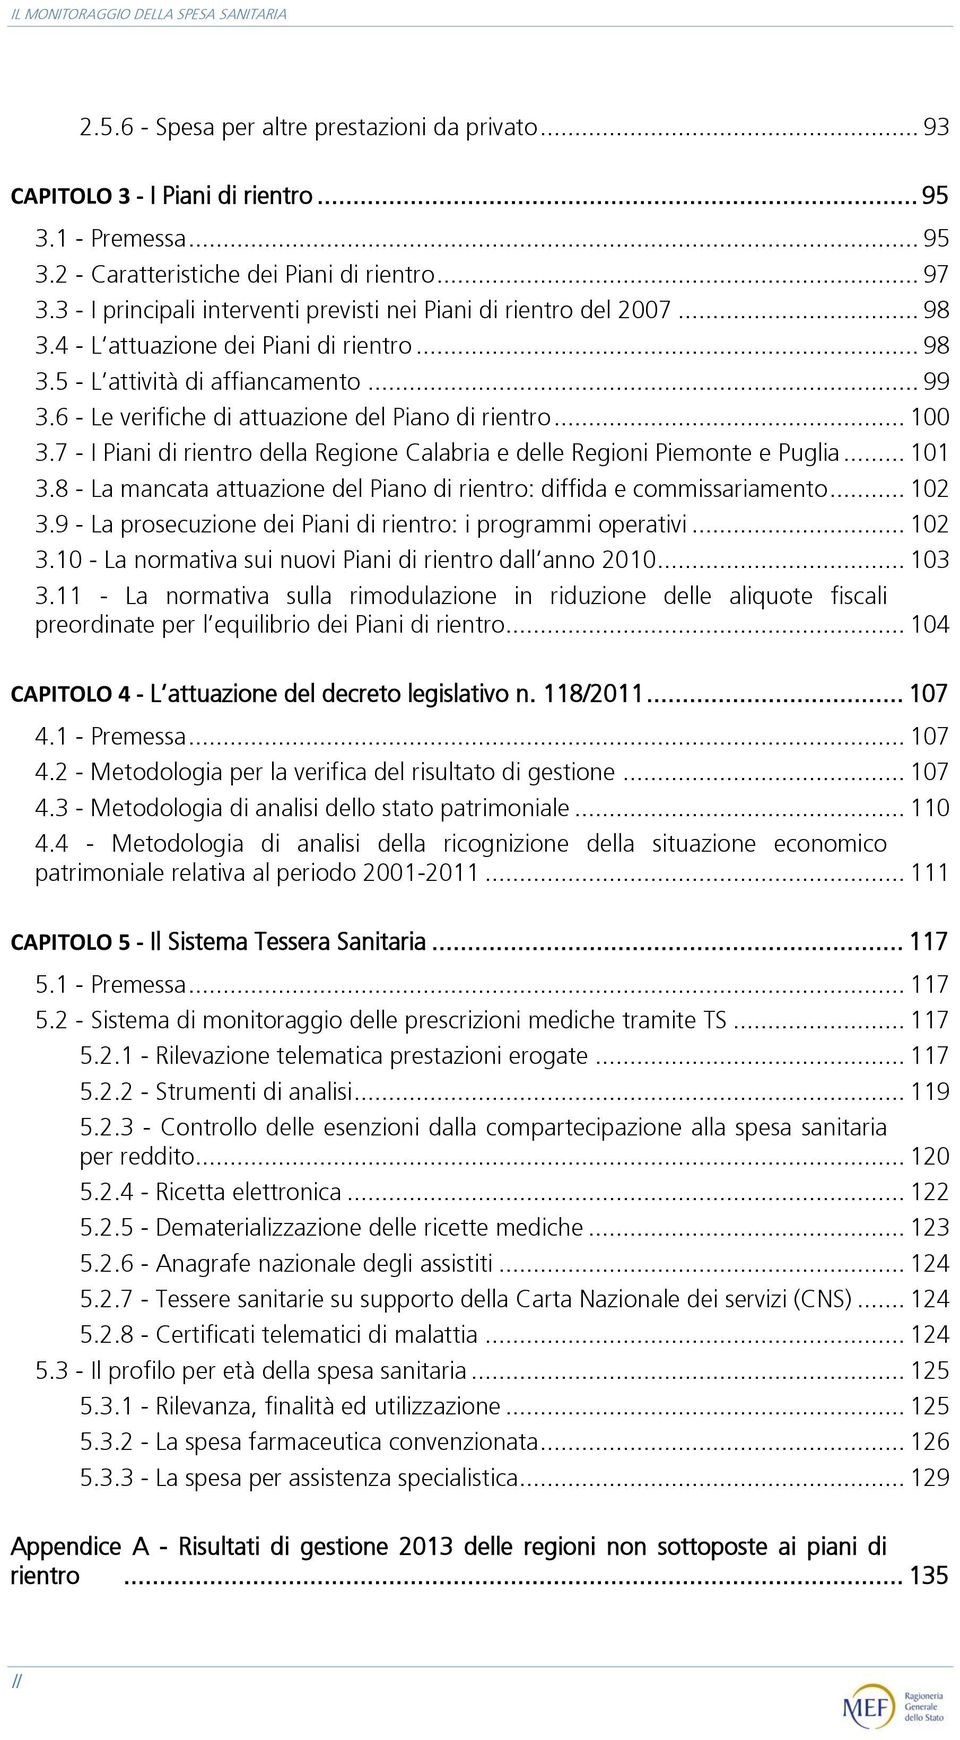 6 - Le verifiche di attuazione del Piano di rientro... 100 3.7 - I Piani di rientro della Regione Calabria e delle Regioni Piemonte e Puglia... 101 3.